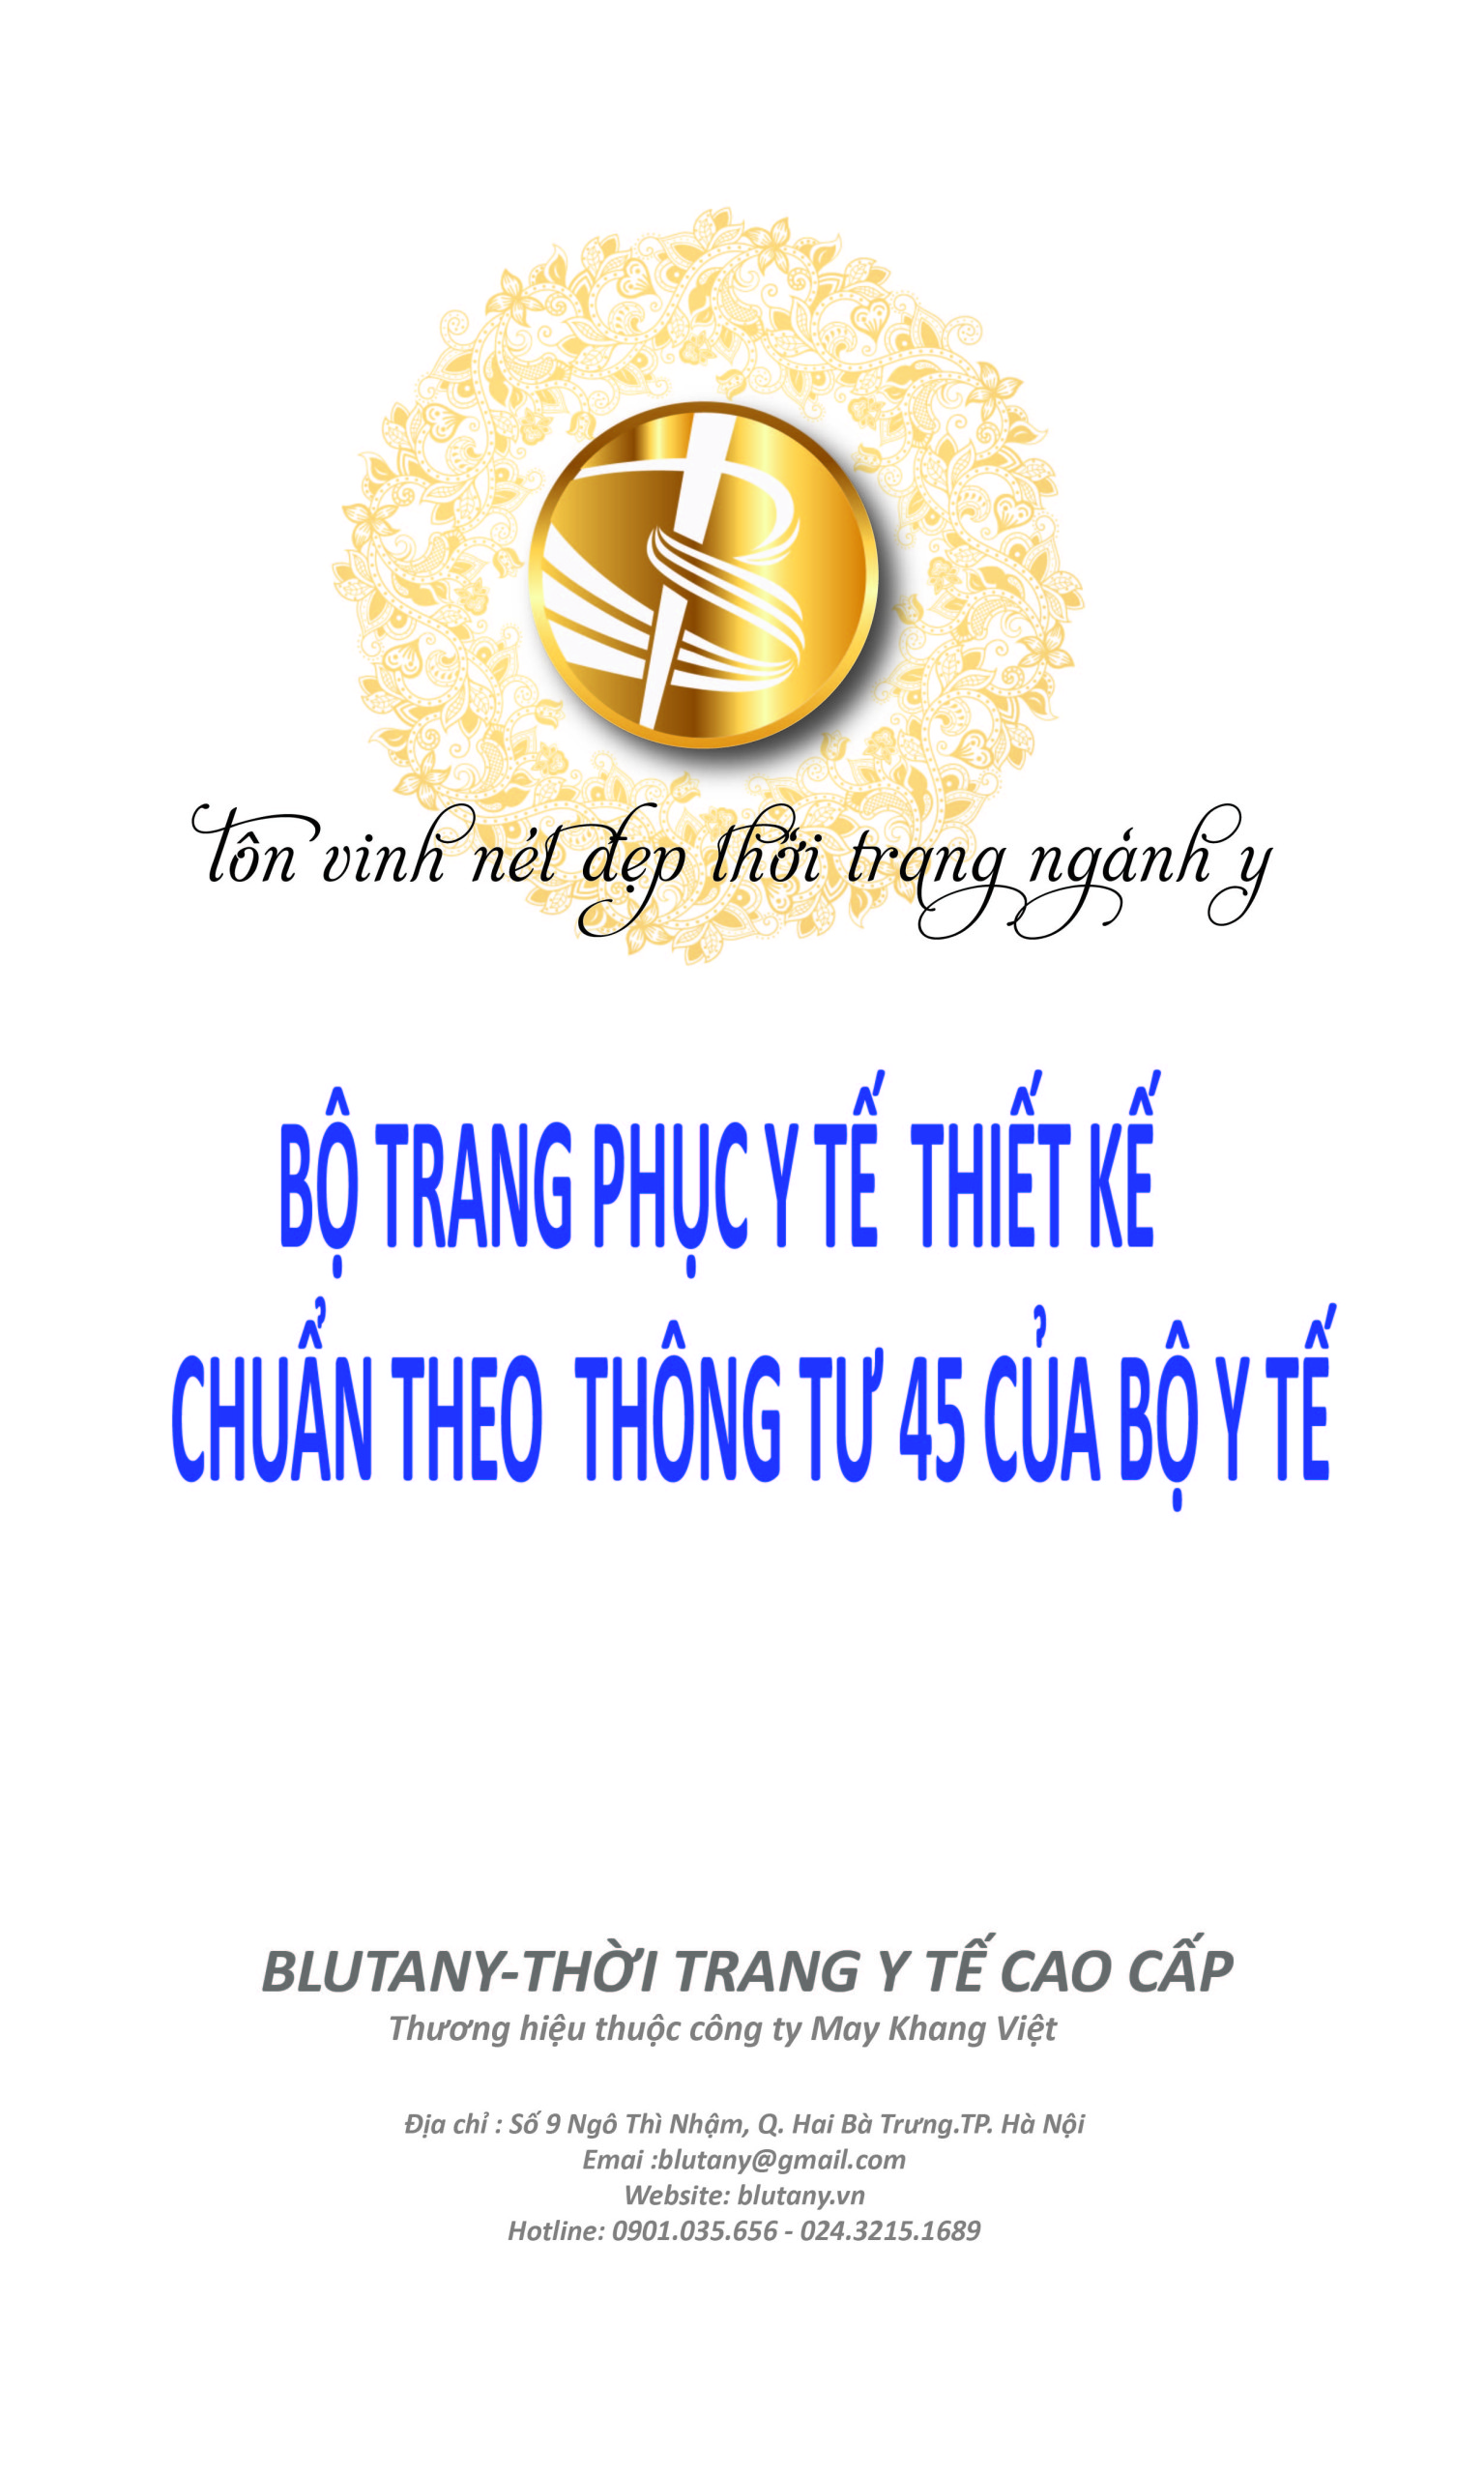 TRANG PHỤC BỆNH VIỆN THEO THÔNG TƯ 45/2015/TT-BYT